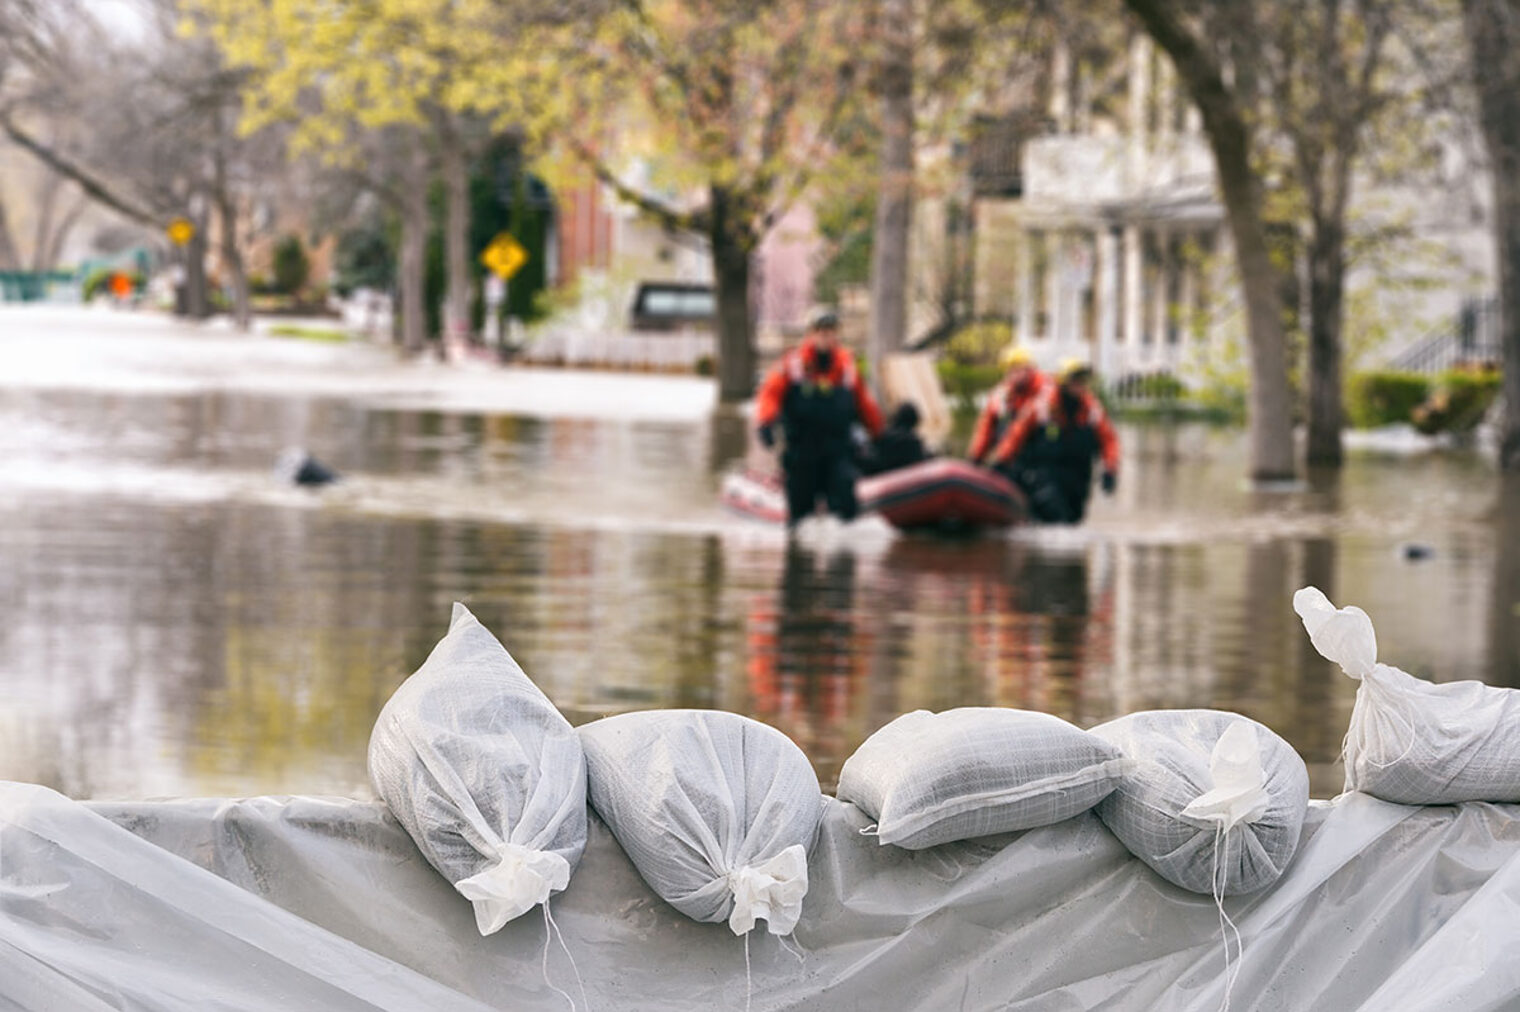 Überschwemmung in einer Stadt mit Sandsäcken und einem Rettungsboot und Helfer*innen.